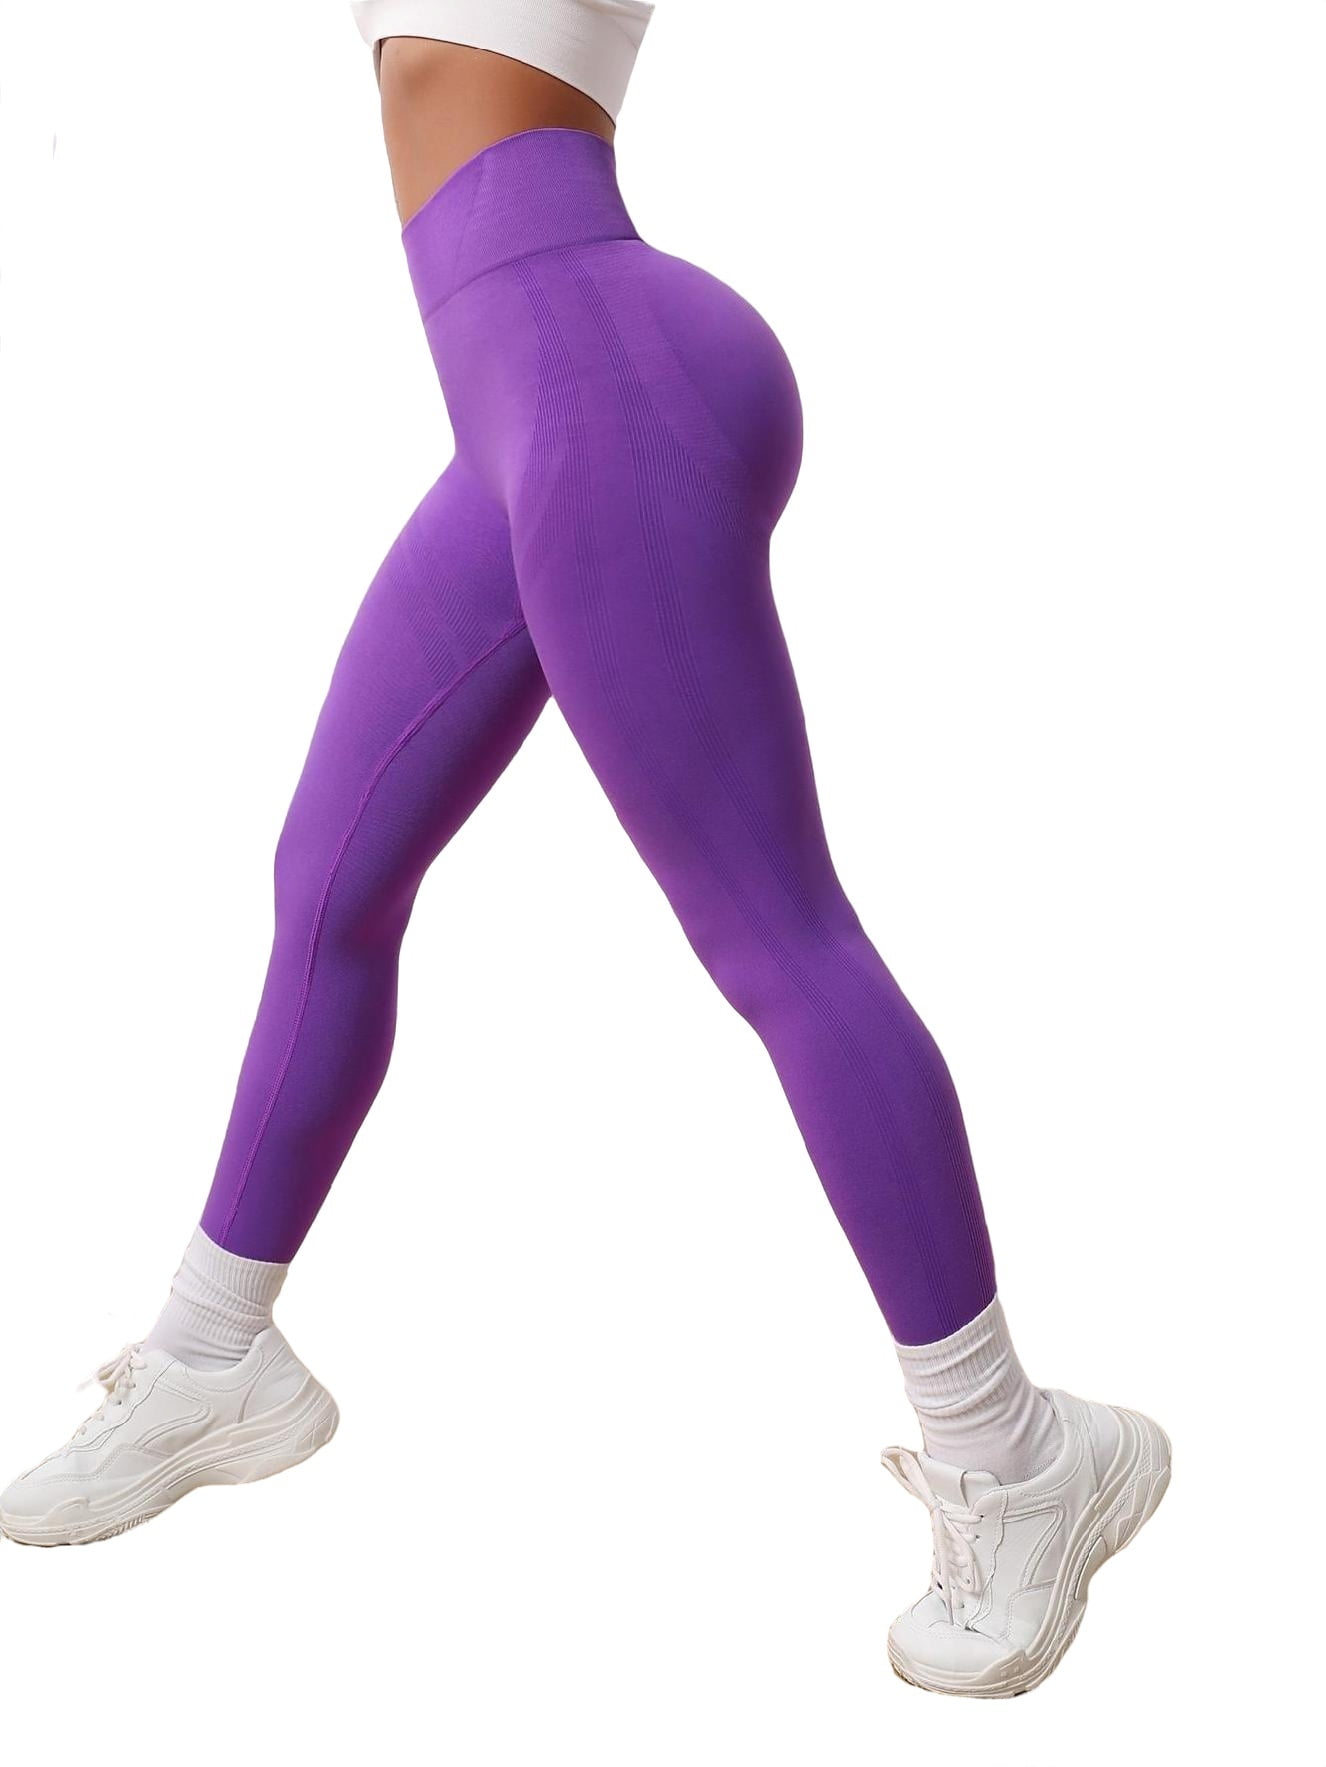 Buy Women's Leggings Purple Plain Sportswear Online